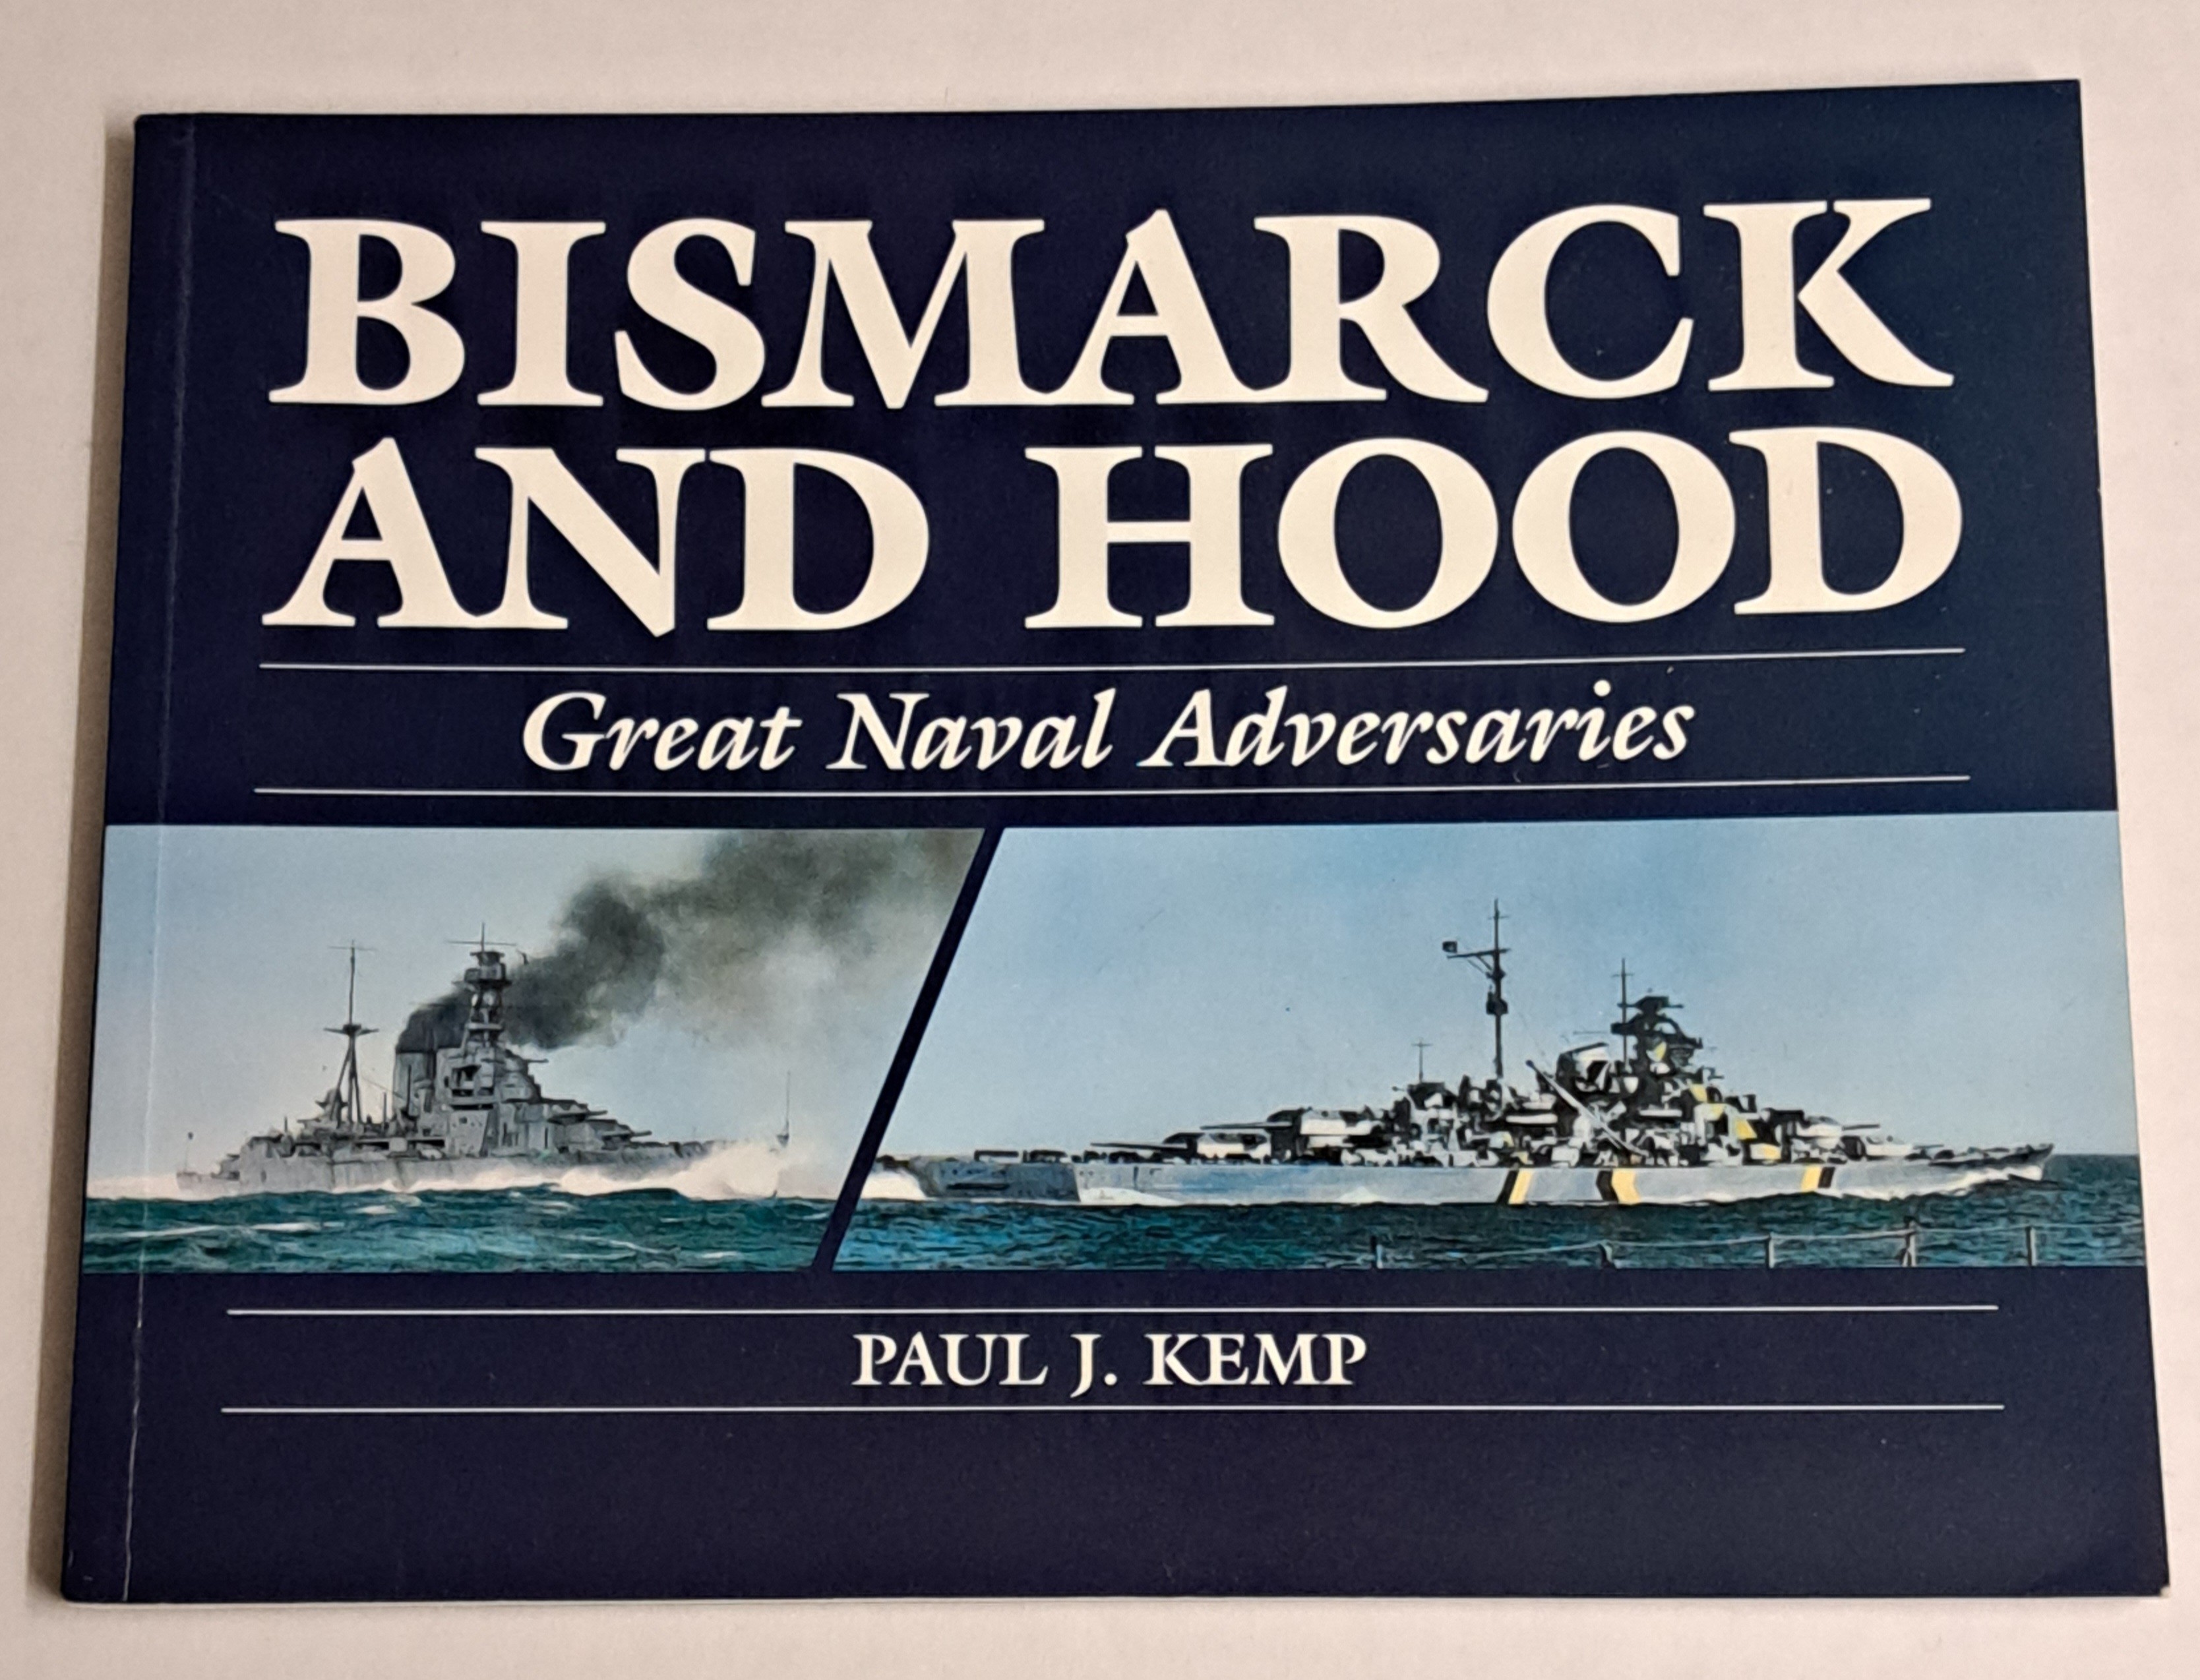 Bismarck and Hood: Great Naval Adversaries